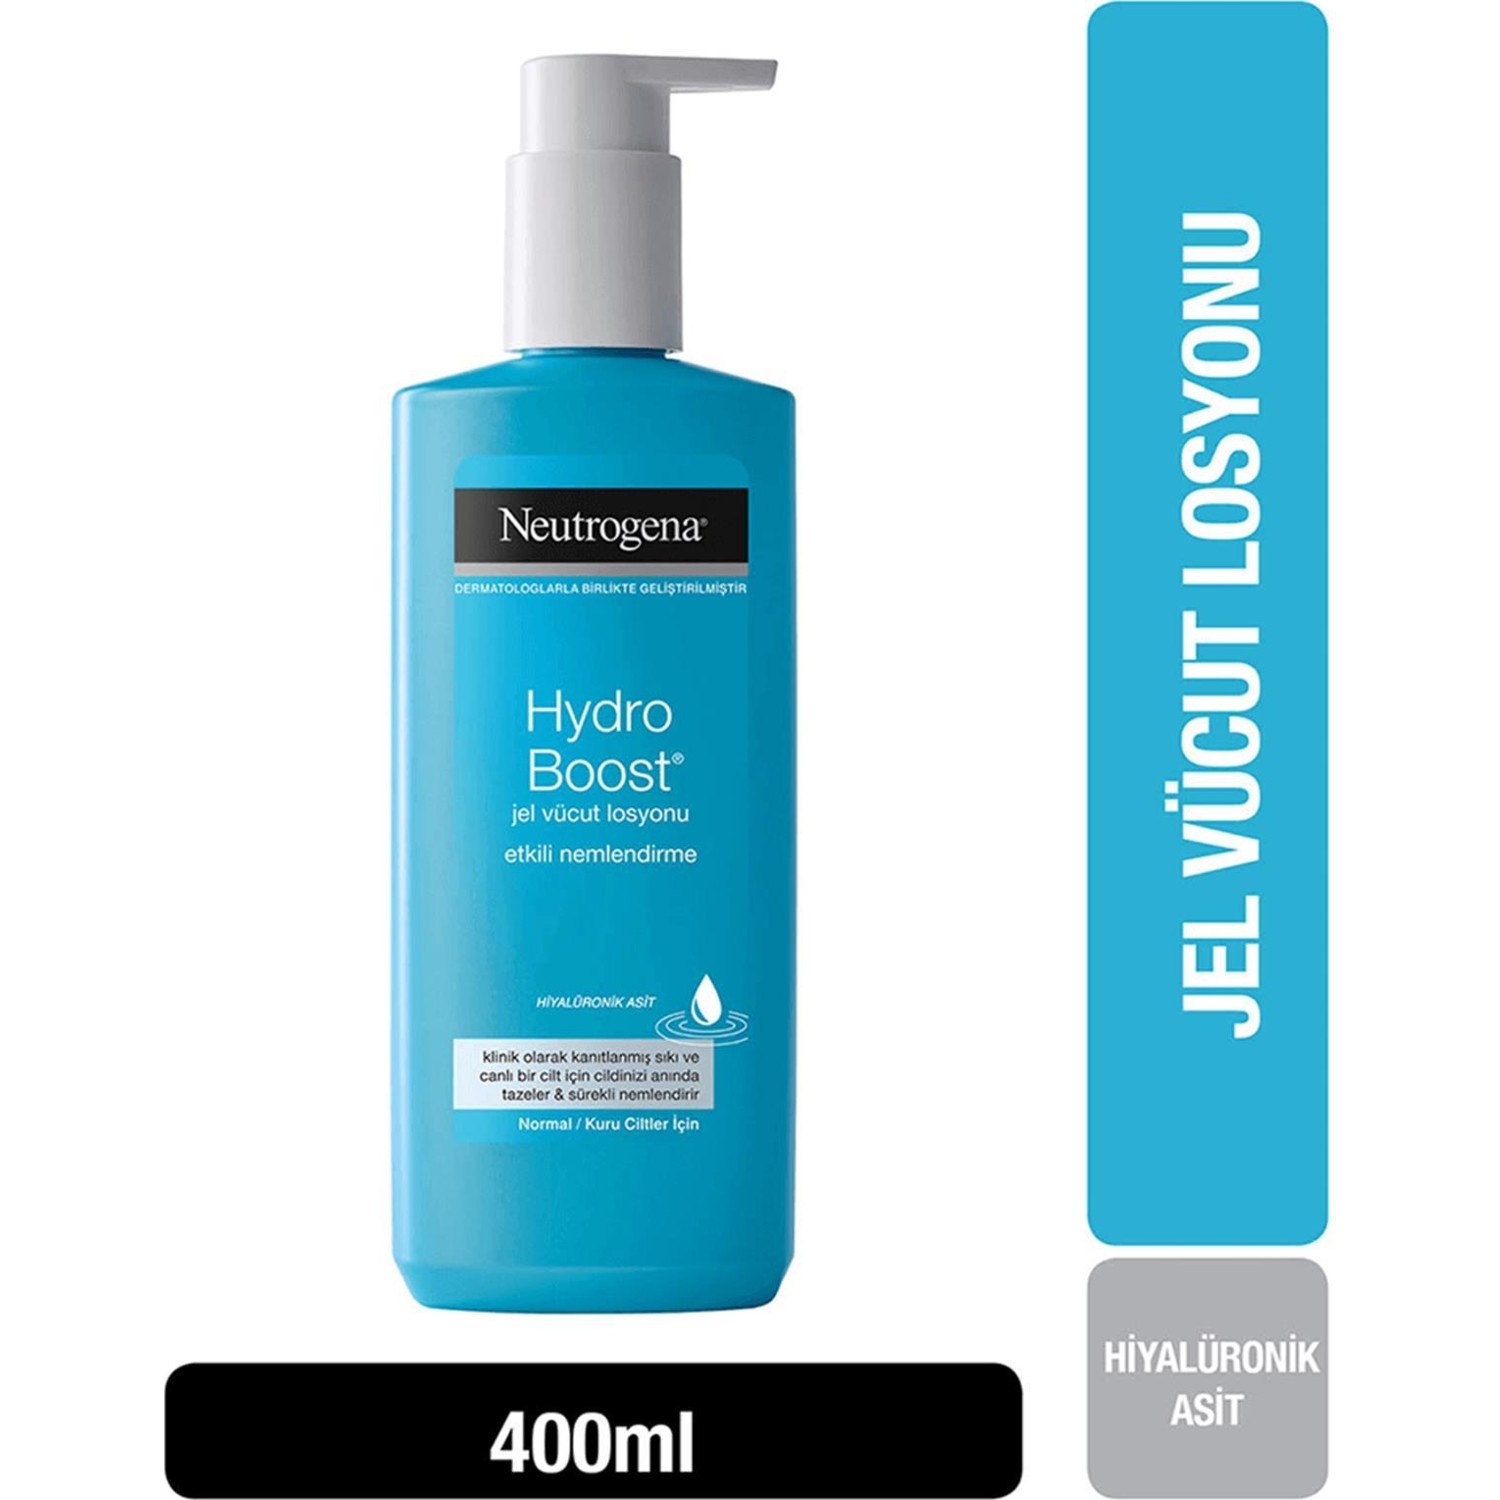 Гель-лосьон для тела Neutrogena Hydro Boost, 400 мл лосьон для тела neutrogena hydro boost 400 мл